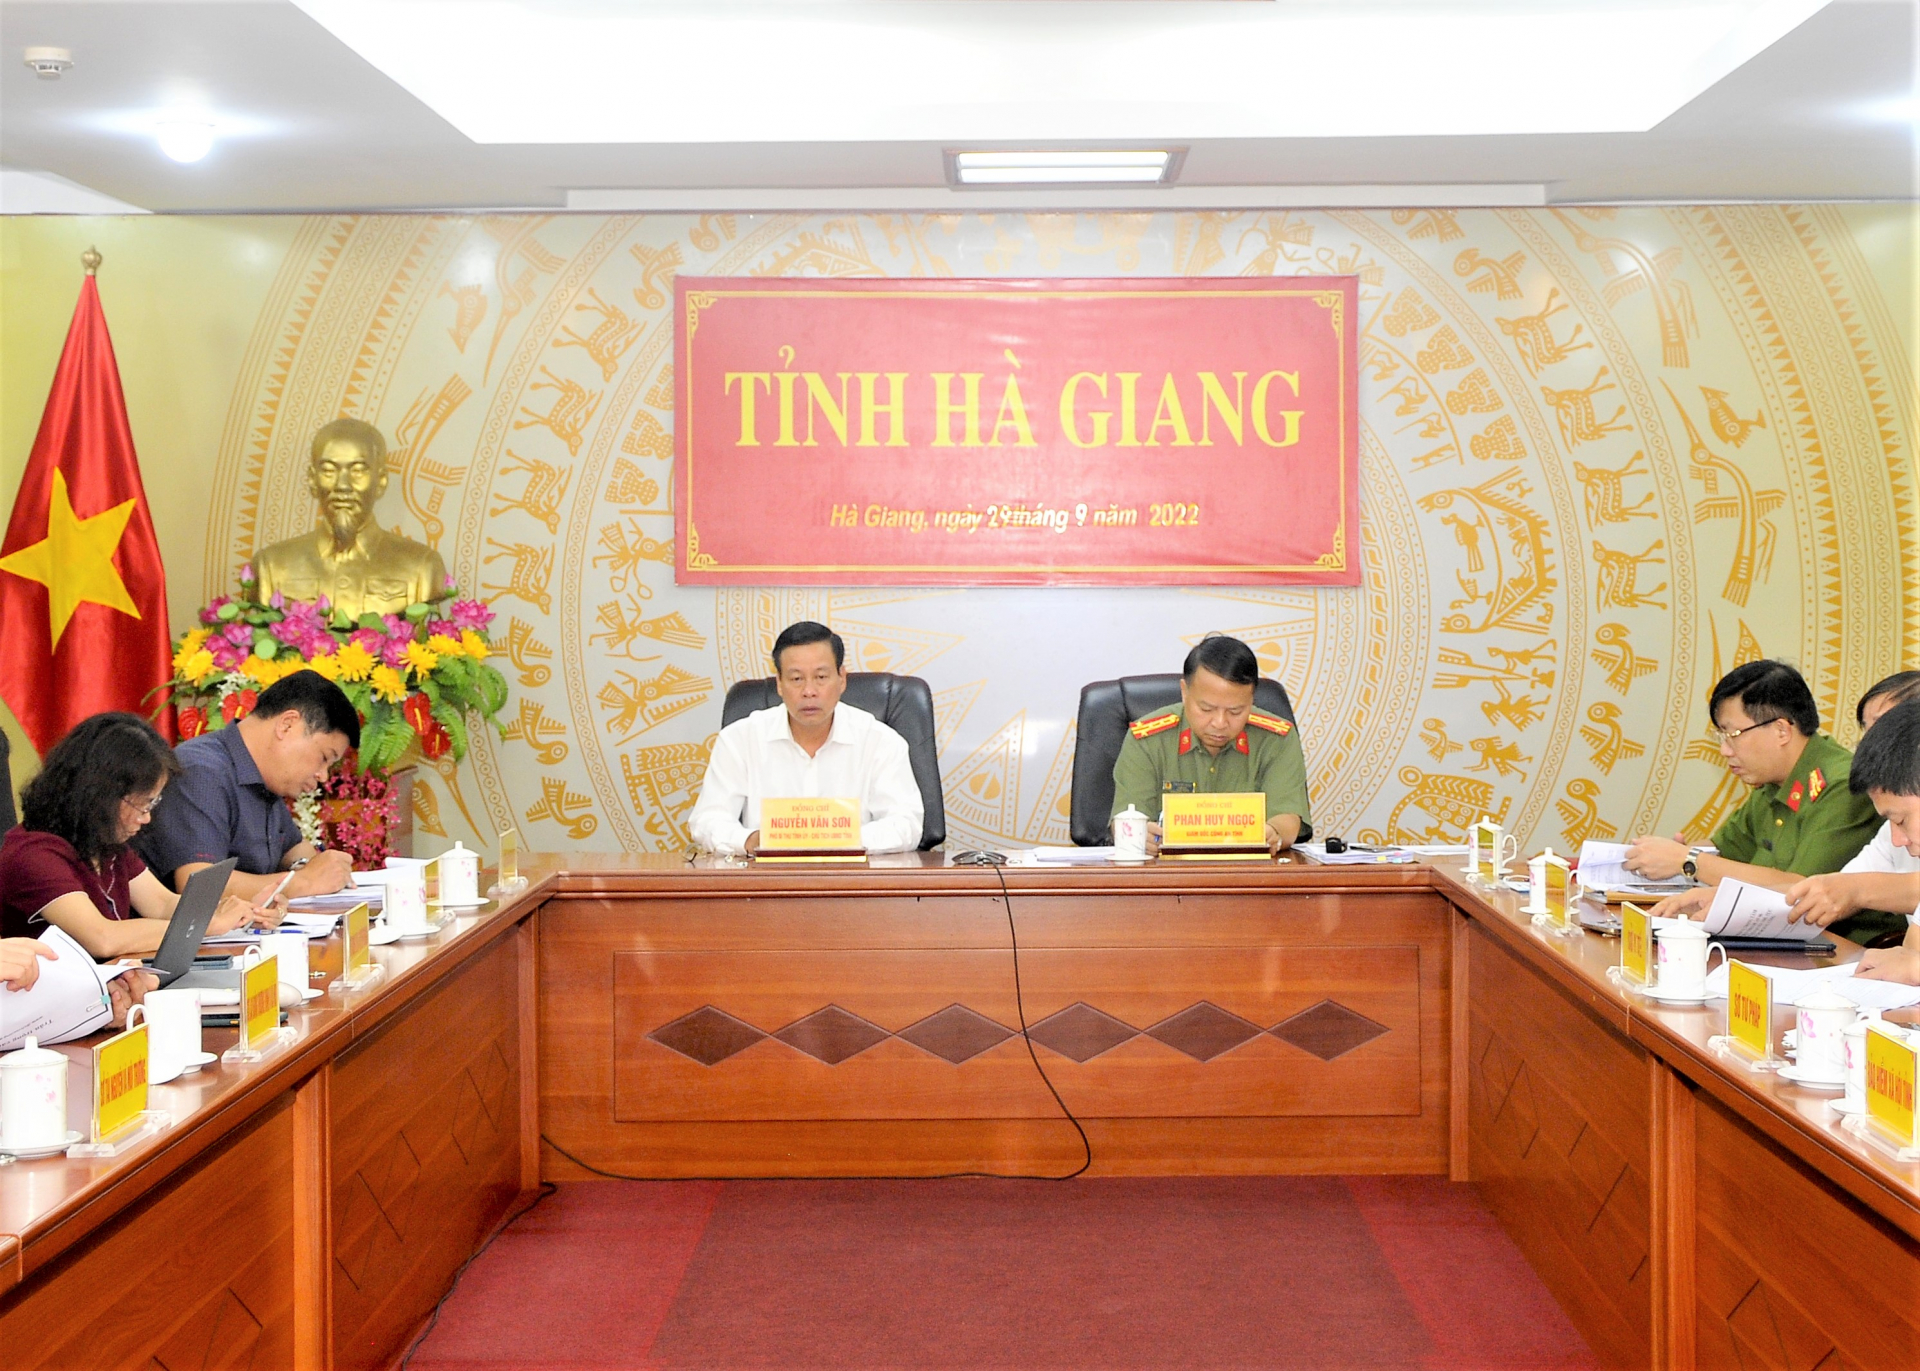 Chủ tịch UBND tỉnh Nguyễn Văn Sơn và Đại tá Phan Huy Ngọc, Giám đốc Công an tỉnh chủ trì hội nghị tại điểm cầu của tỉnh.